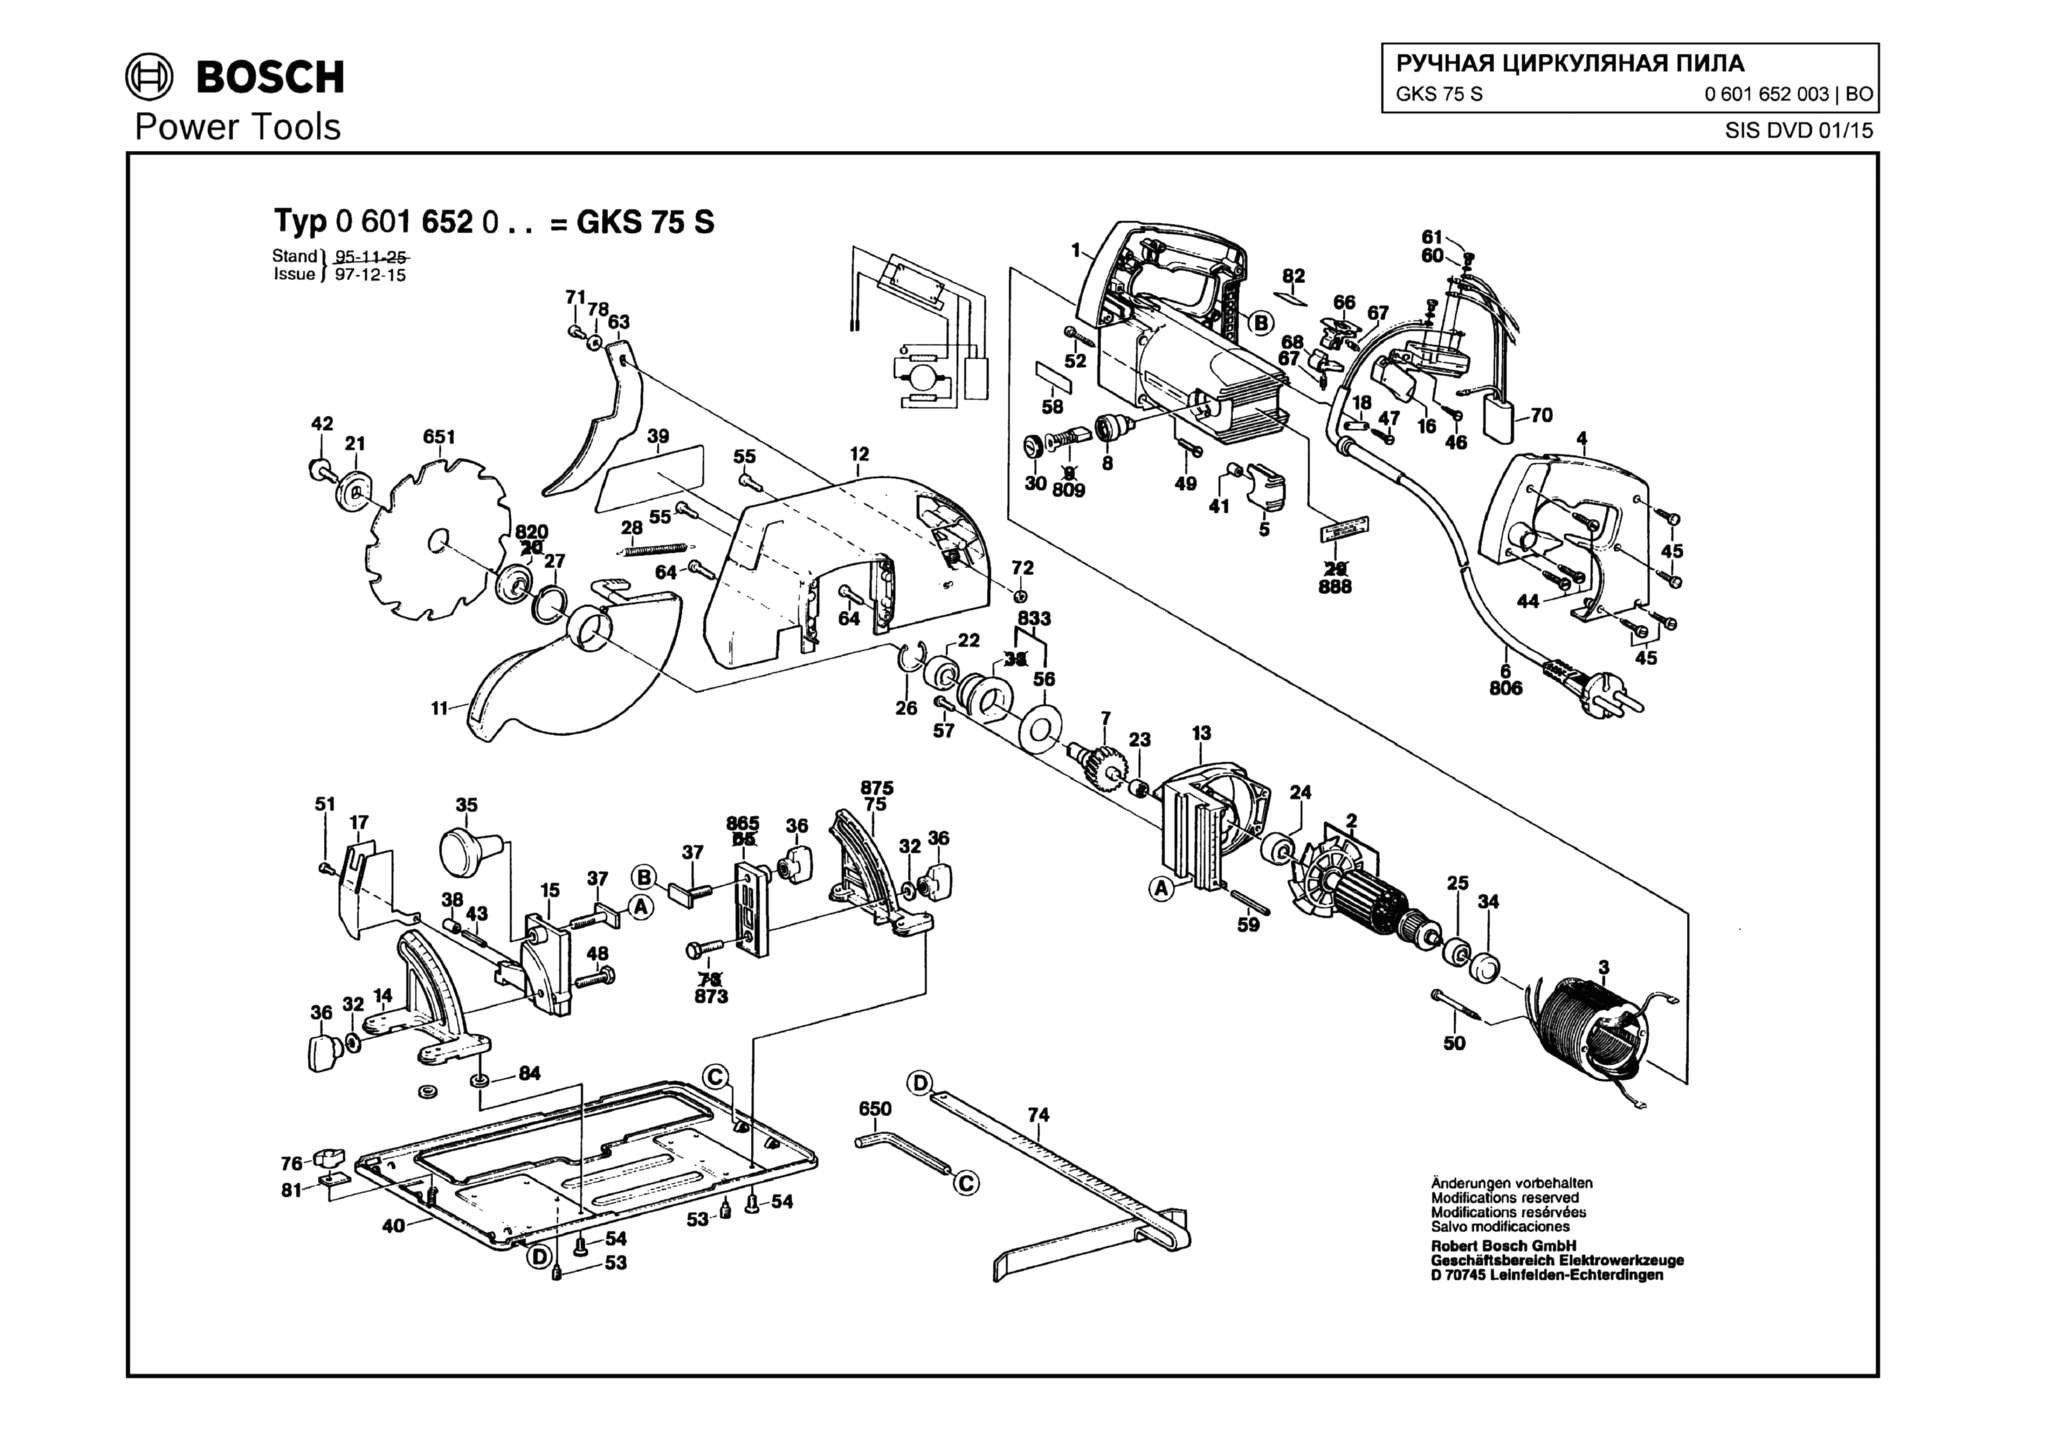 Запчасти, схема и деталировка Bosch GKS 75 S (ТИП 0601652003)